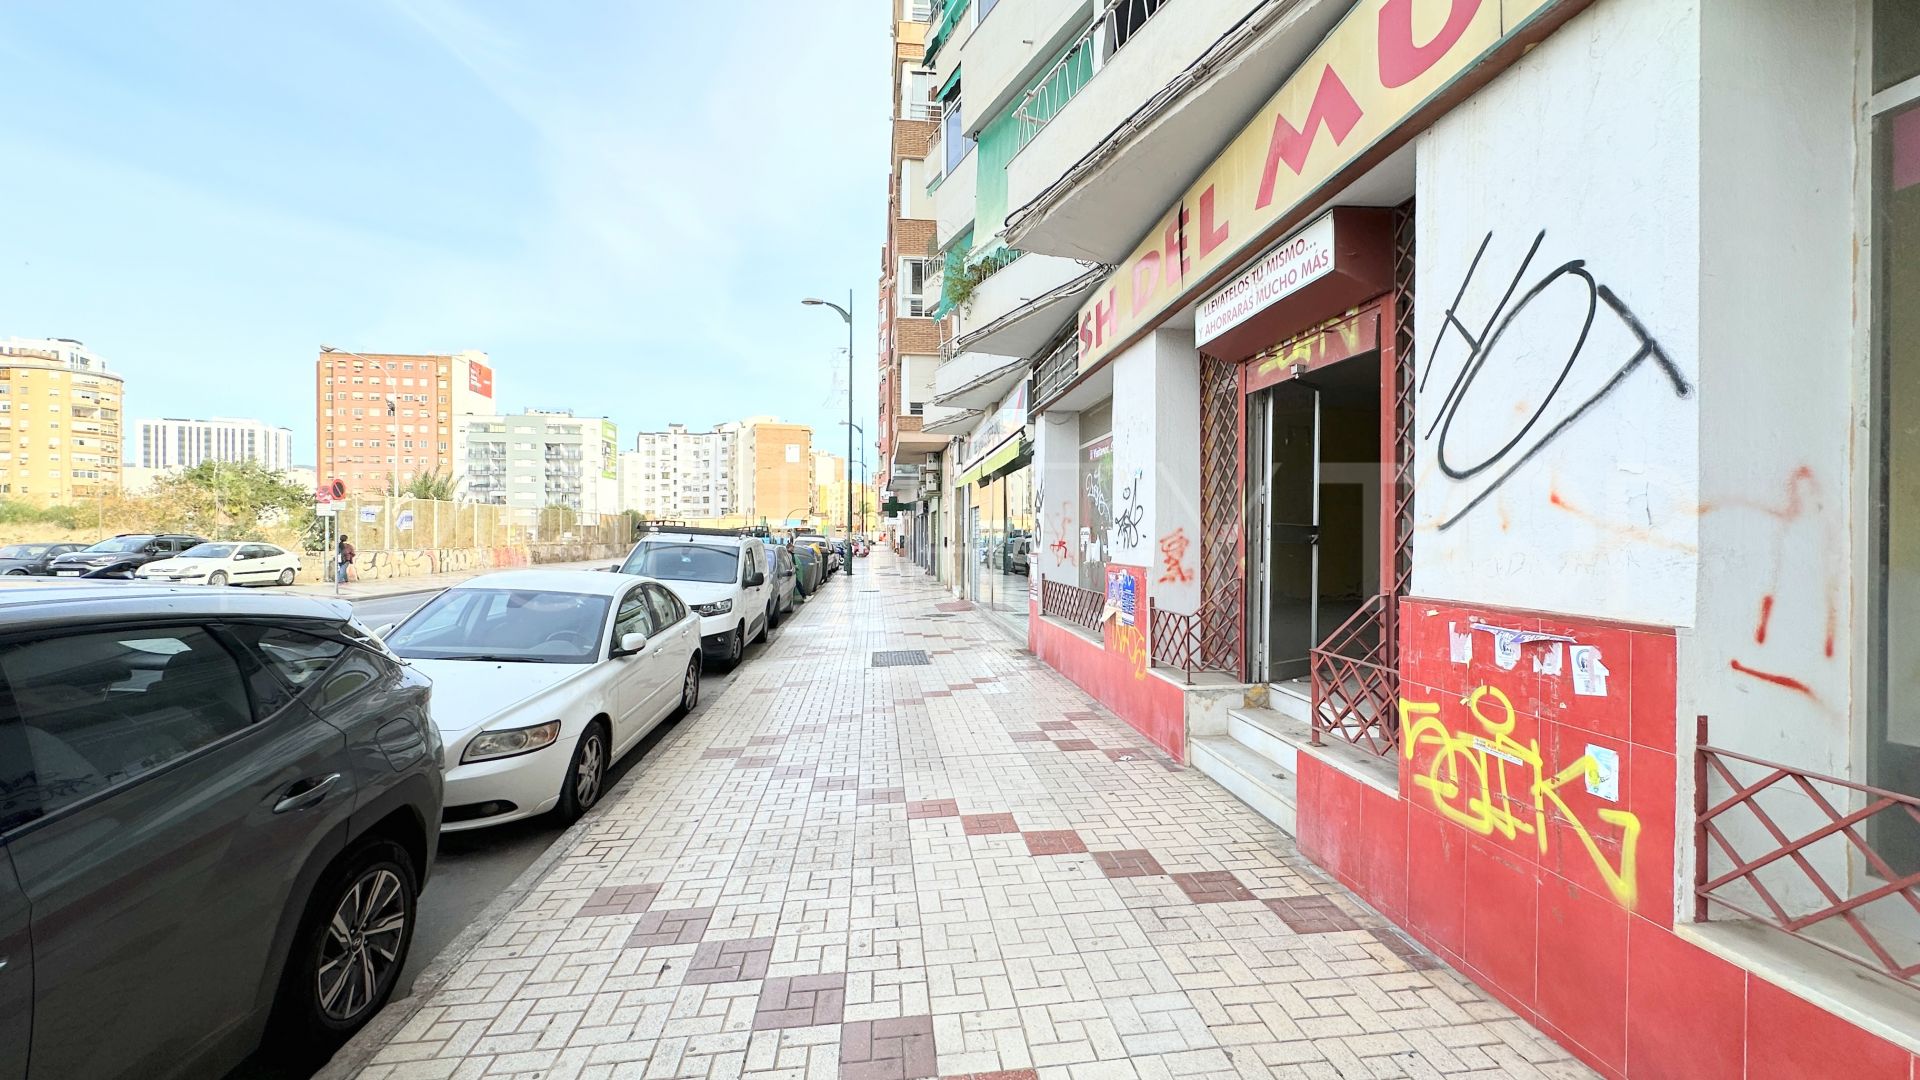 Commercial premises for sale in La Luz - El Torcal